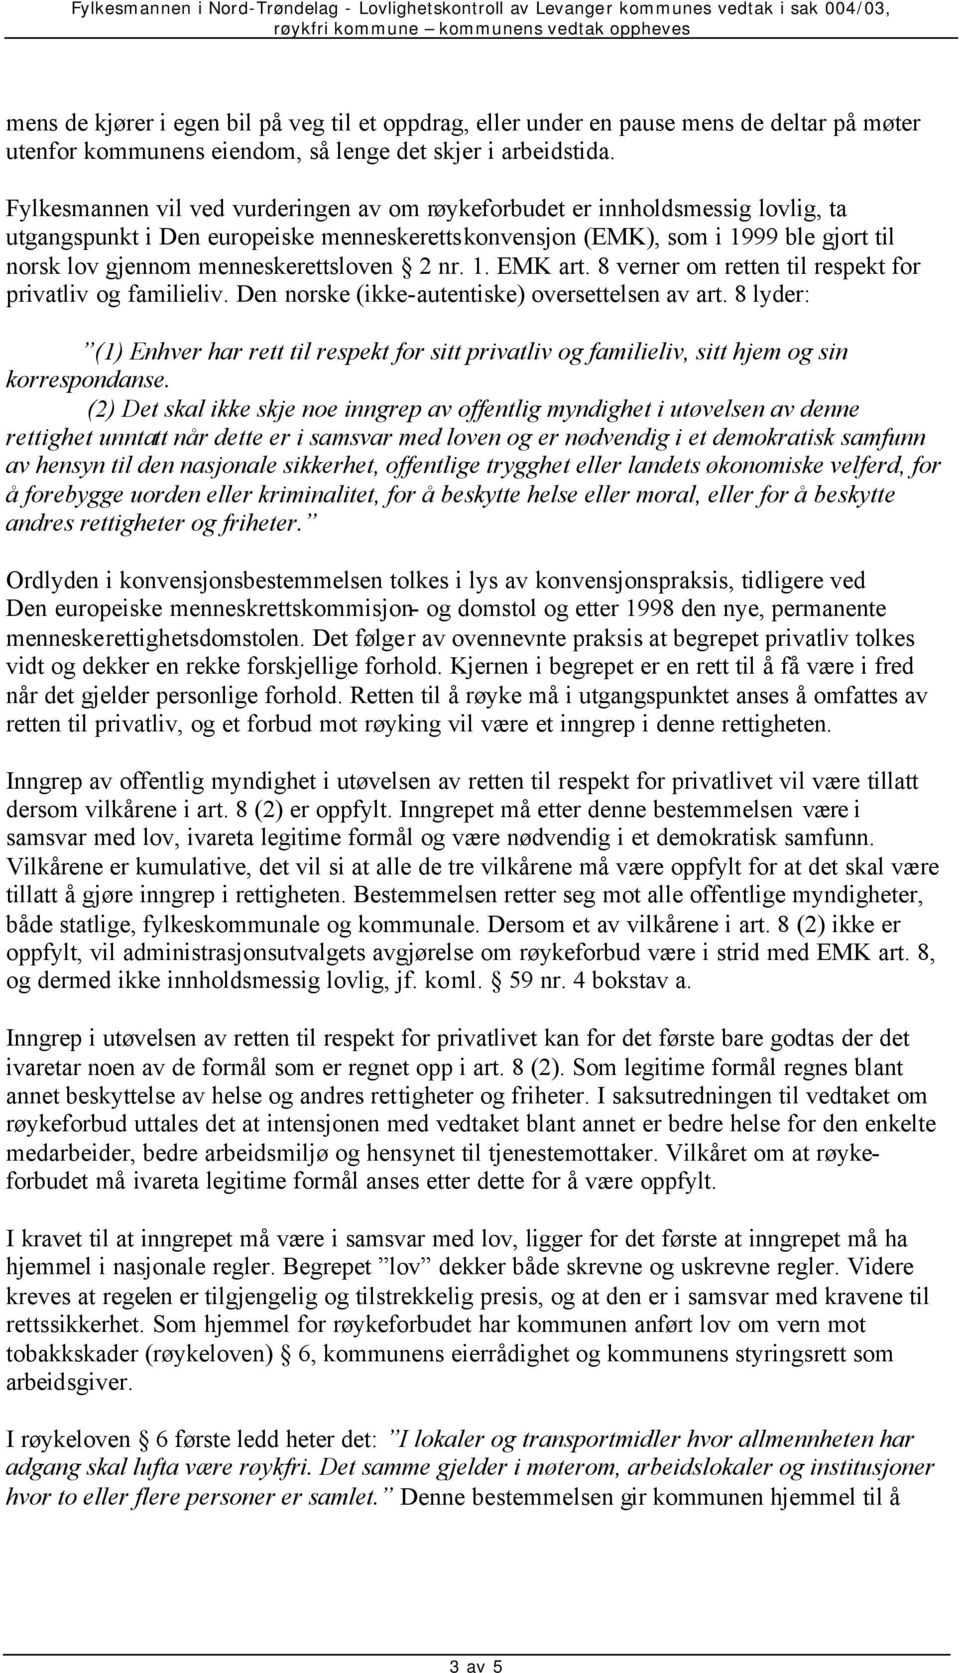 menneskerettsloven 2 nr. 1. EMK art. 8 verner om retten til respekt for privatliv og familieliv. Den norske (ikke-autentiske) oversettelsen av art.